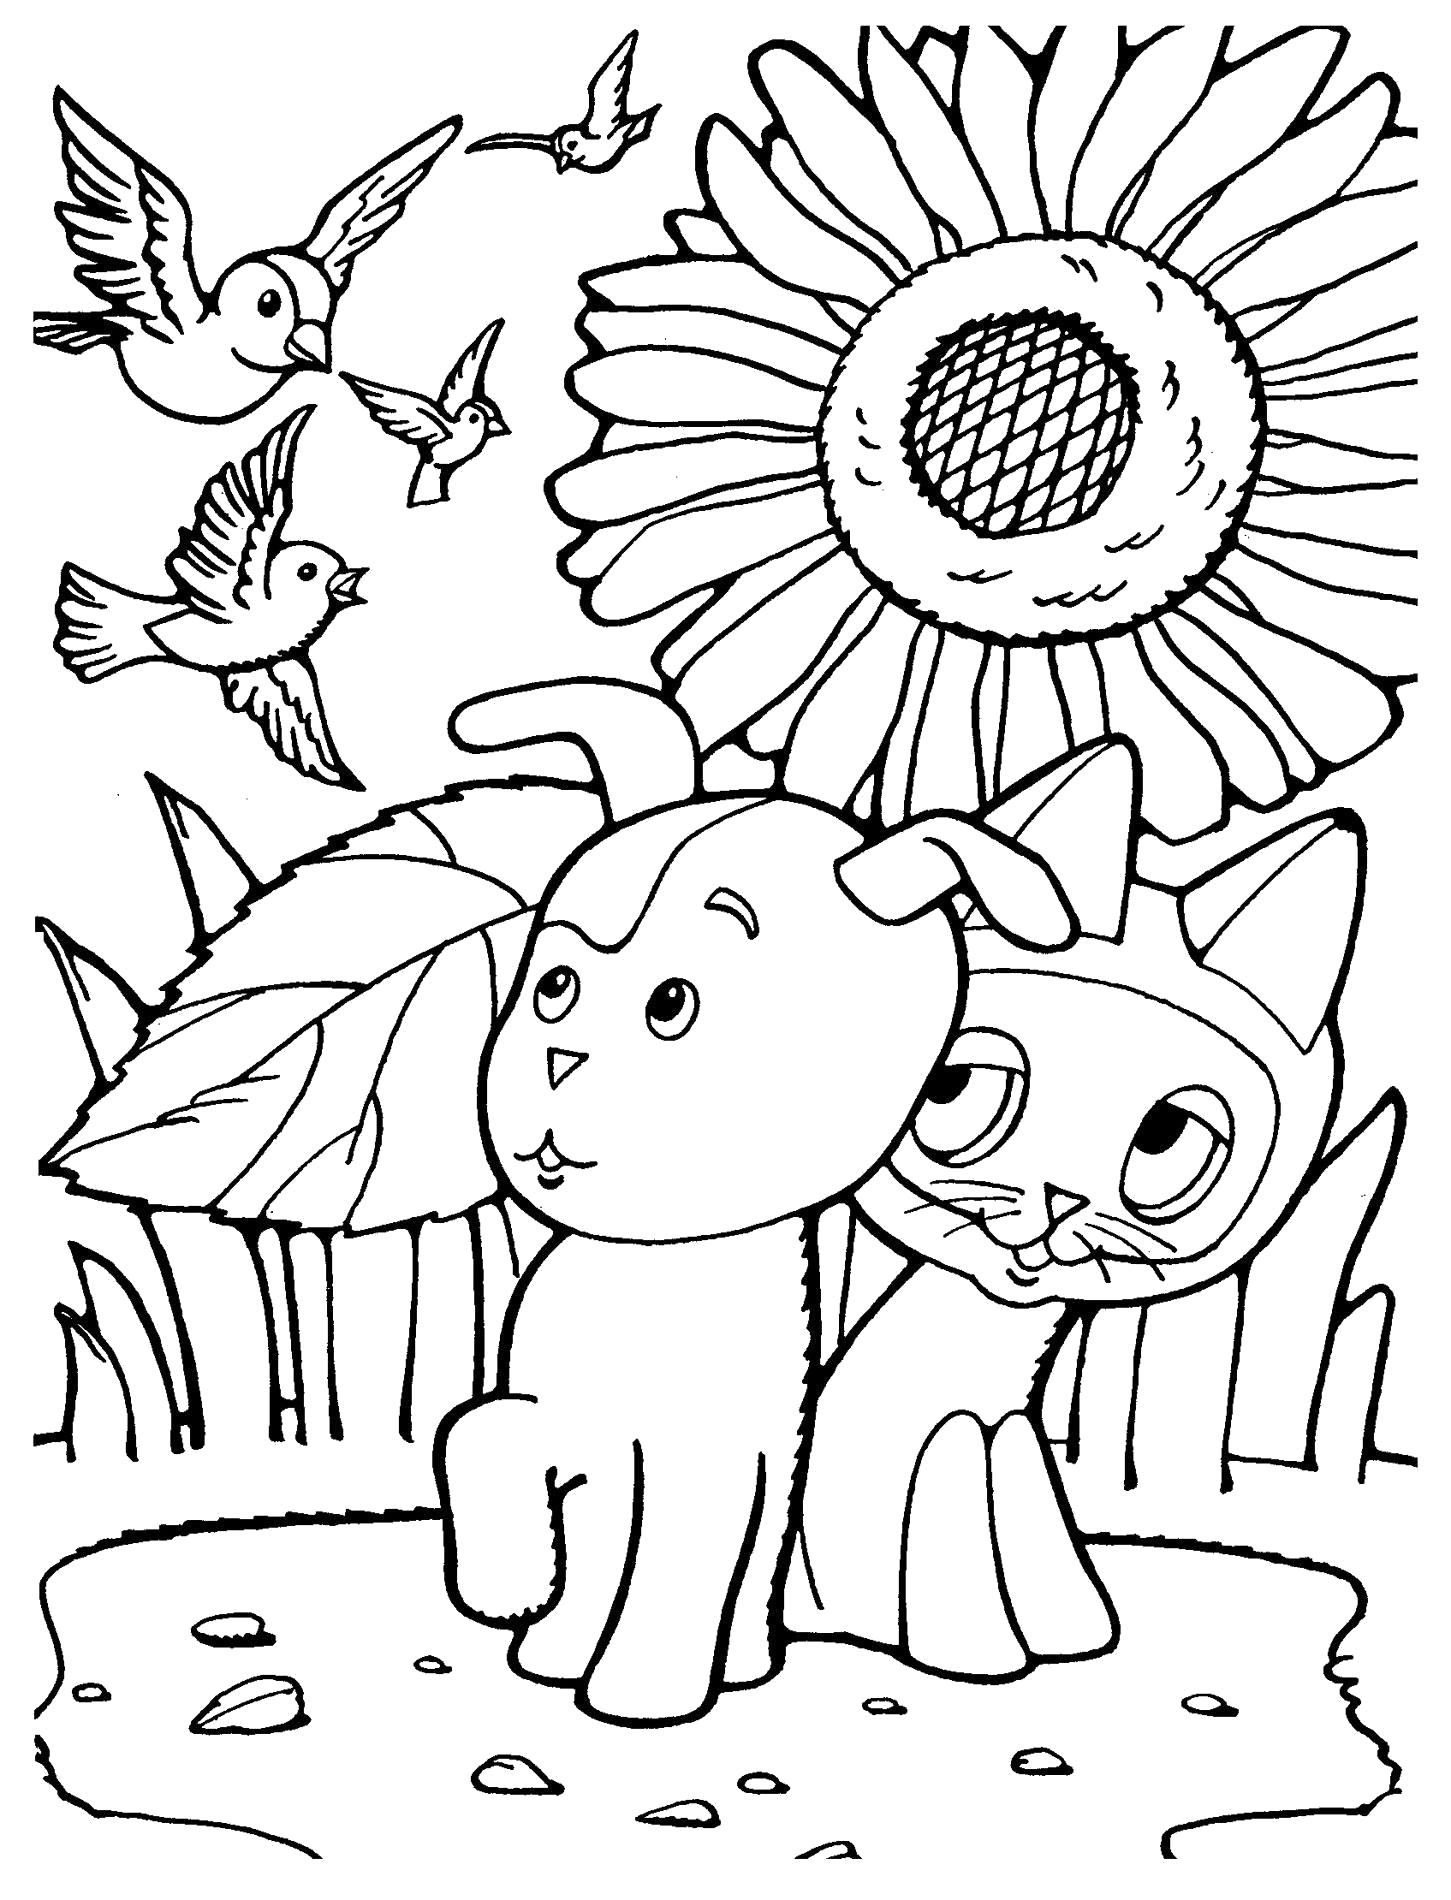 Раскраска Мультфильм Котенок по имени Гав! котенок и собака шарик испугались птиц. 